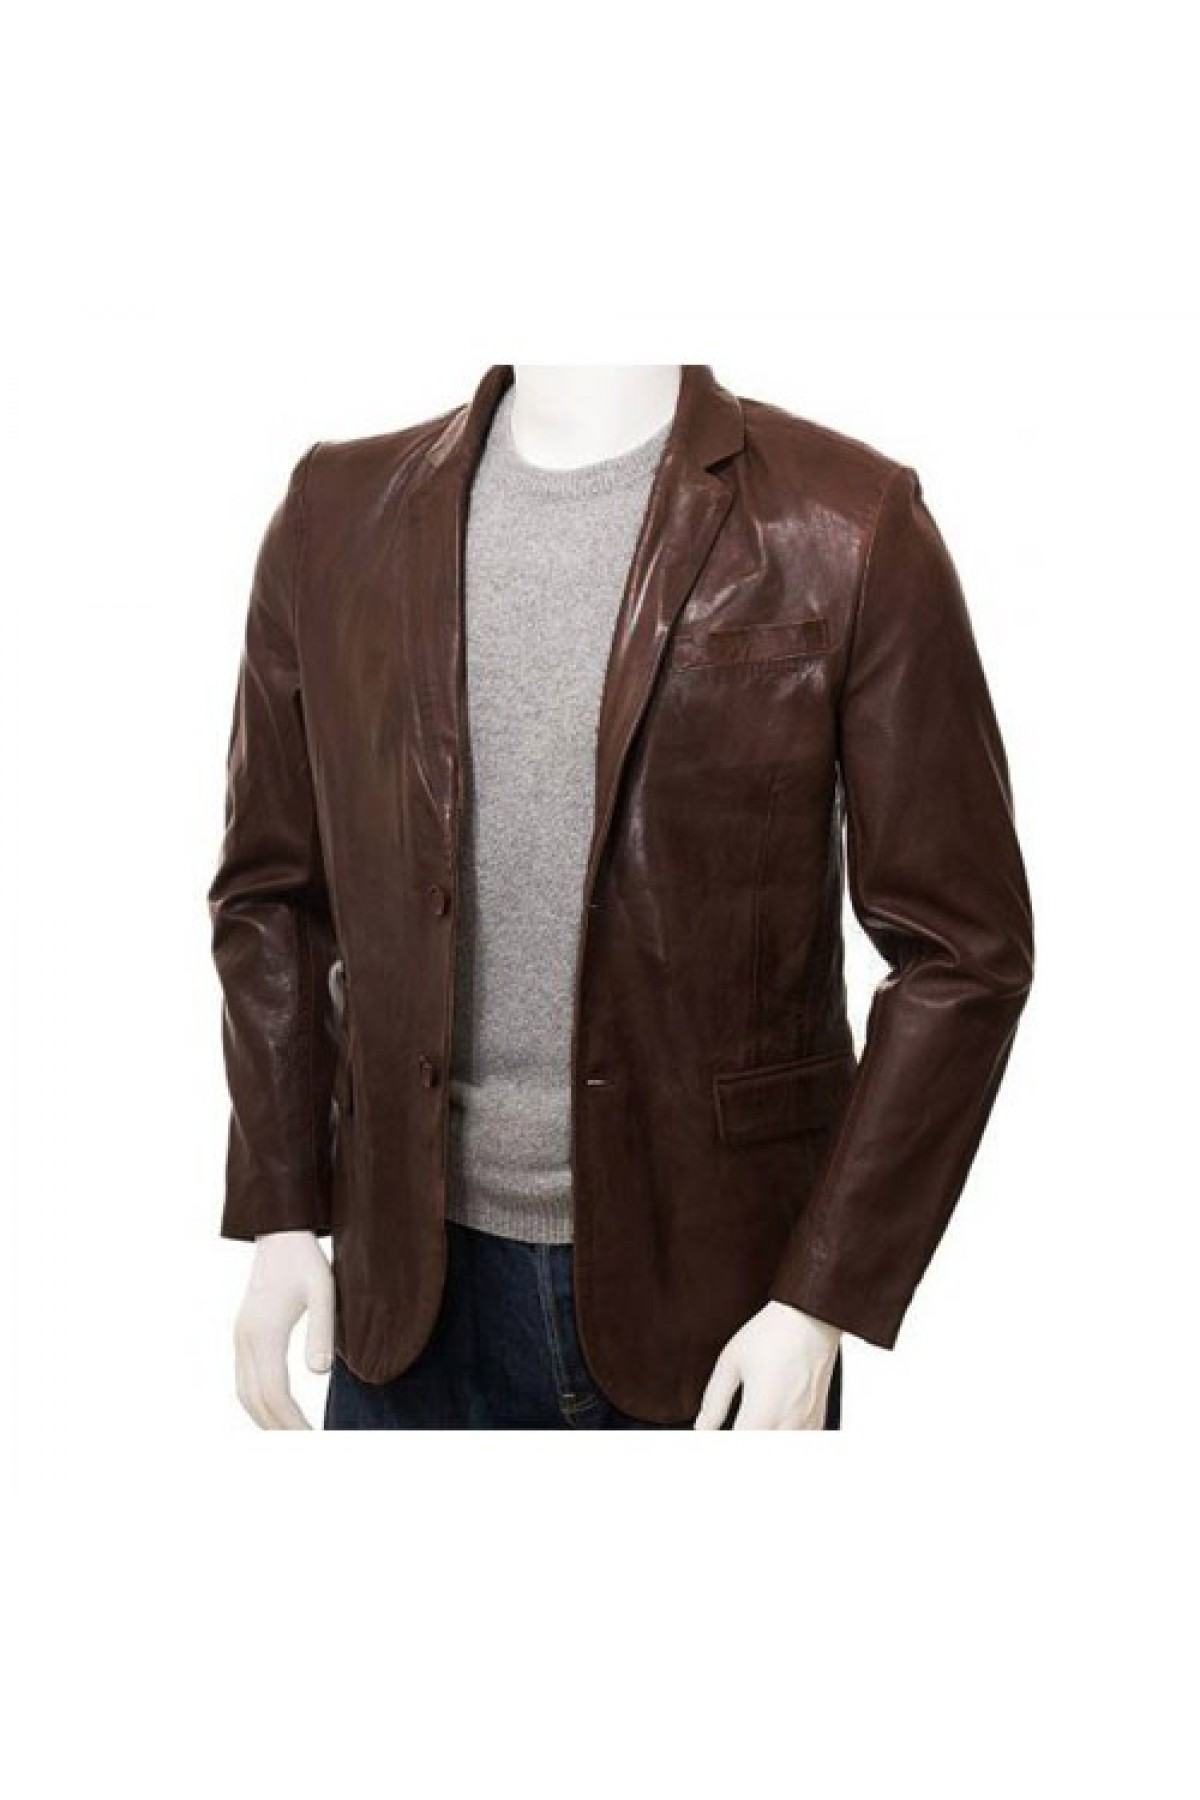 The Gentlemen Hugh Grant Brown Leather Jacket